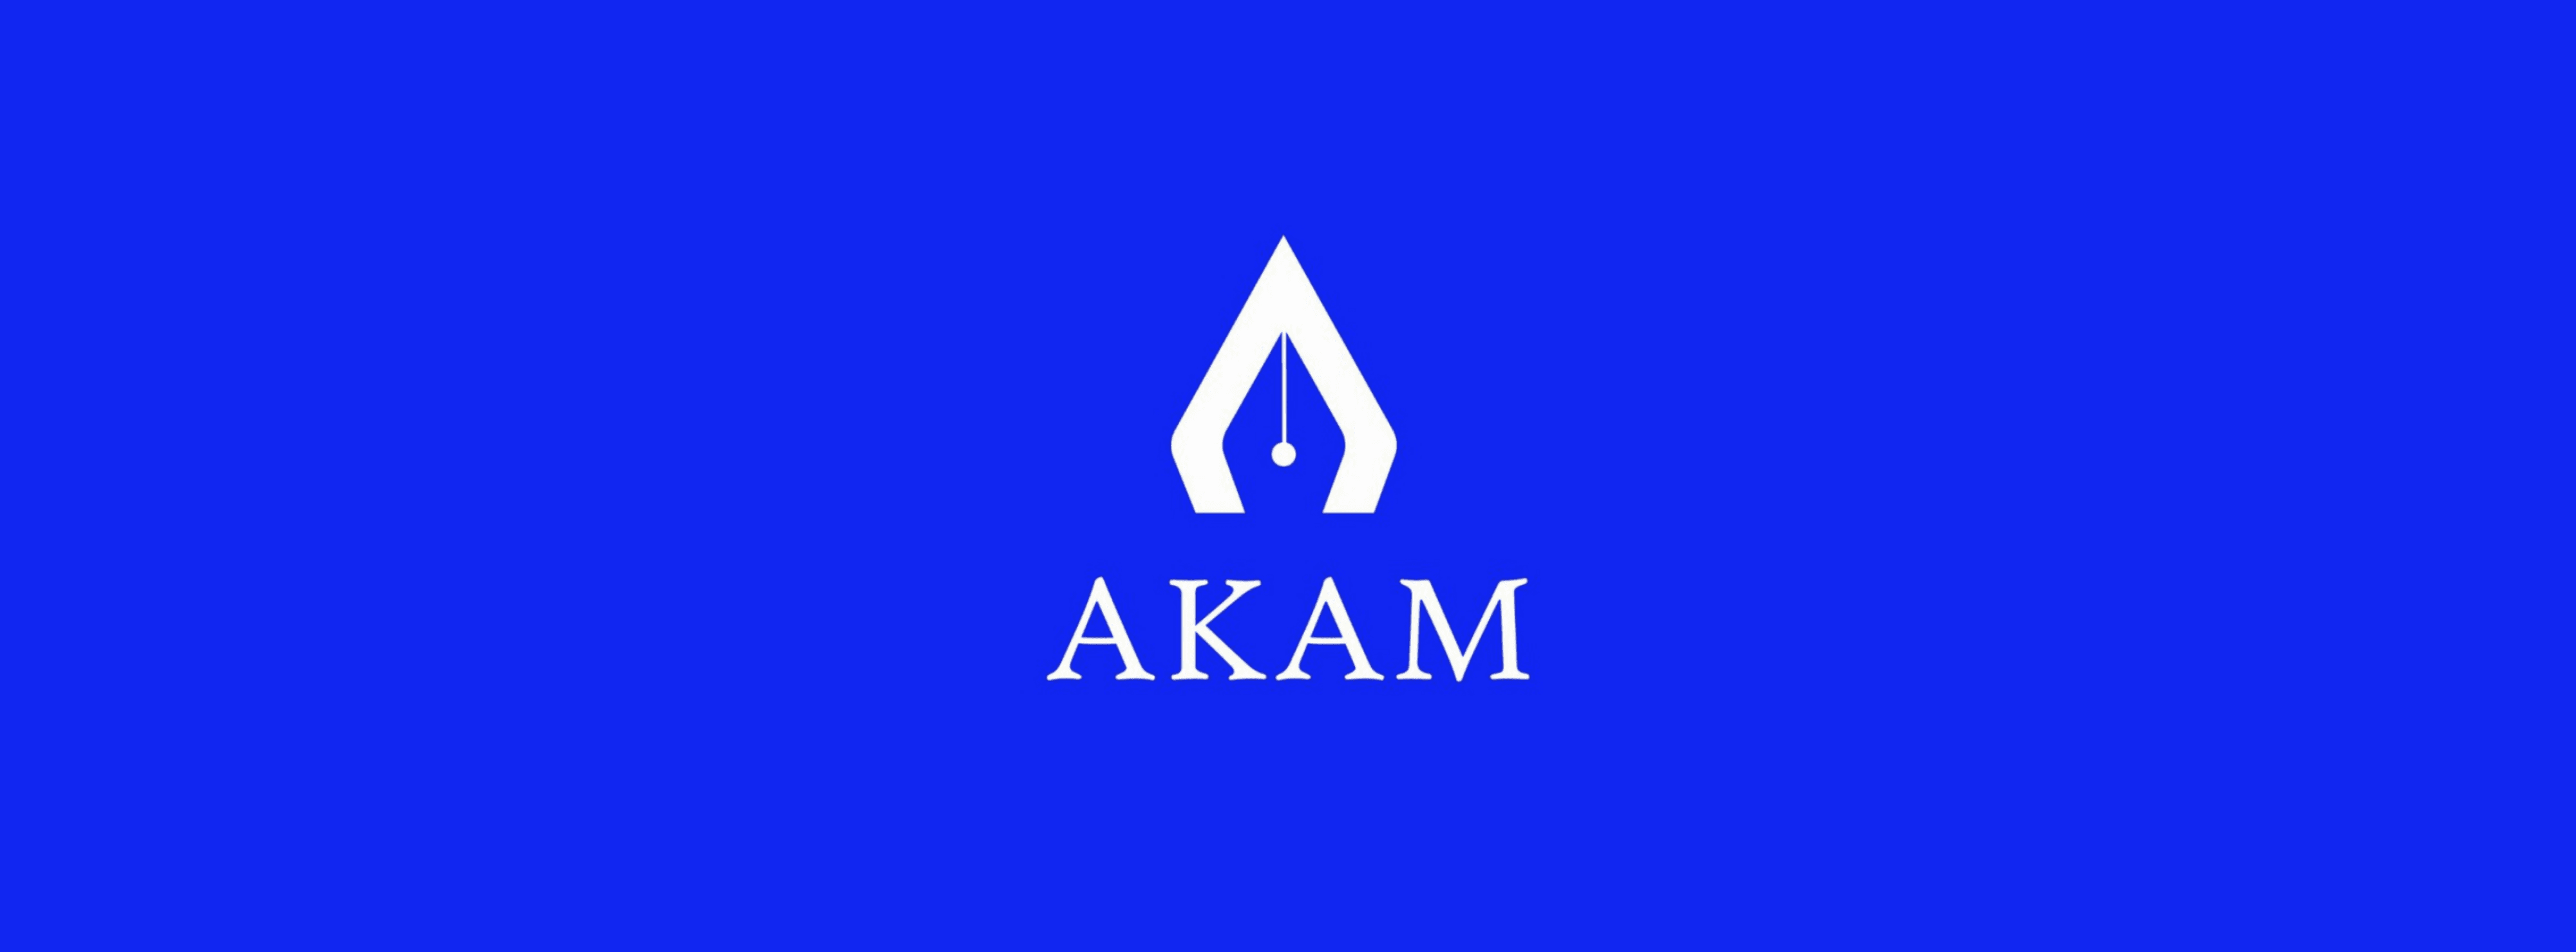 AKAM_ART banner